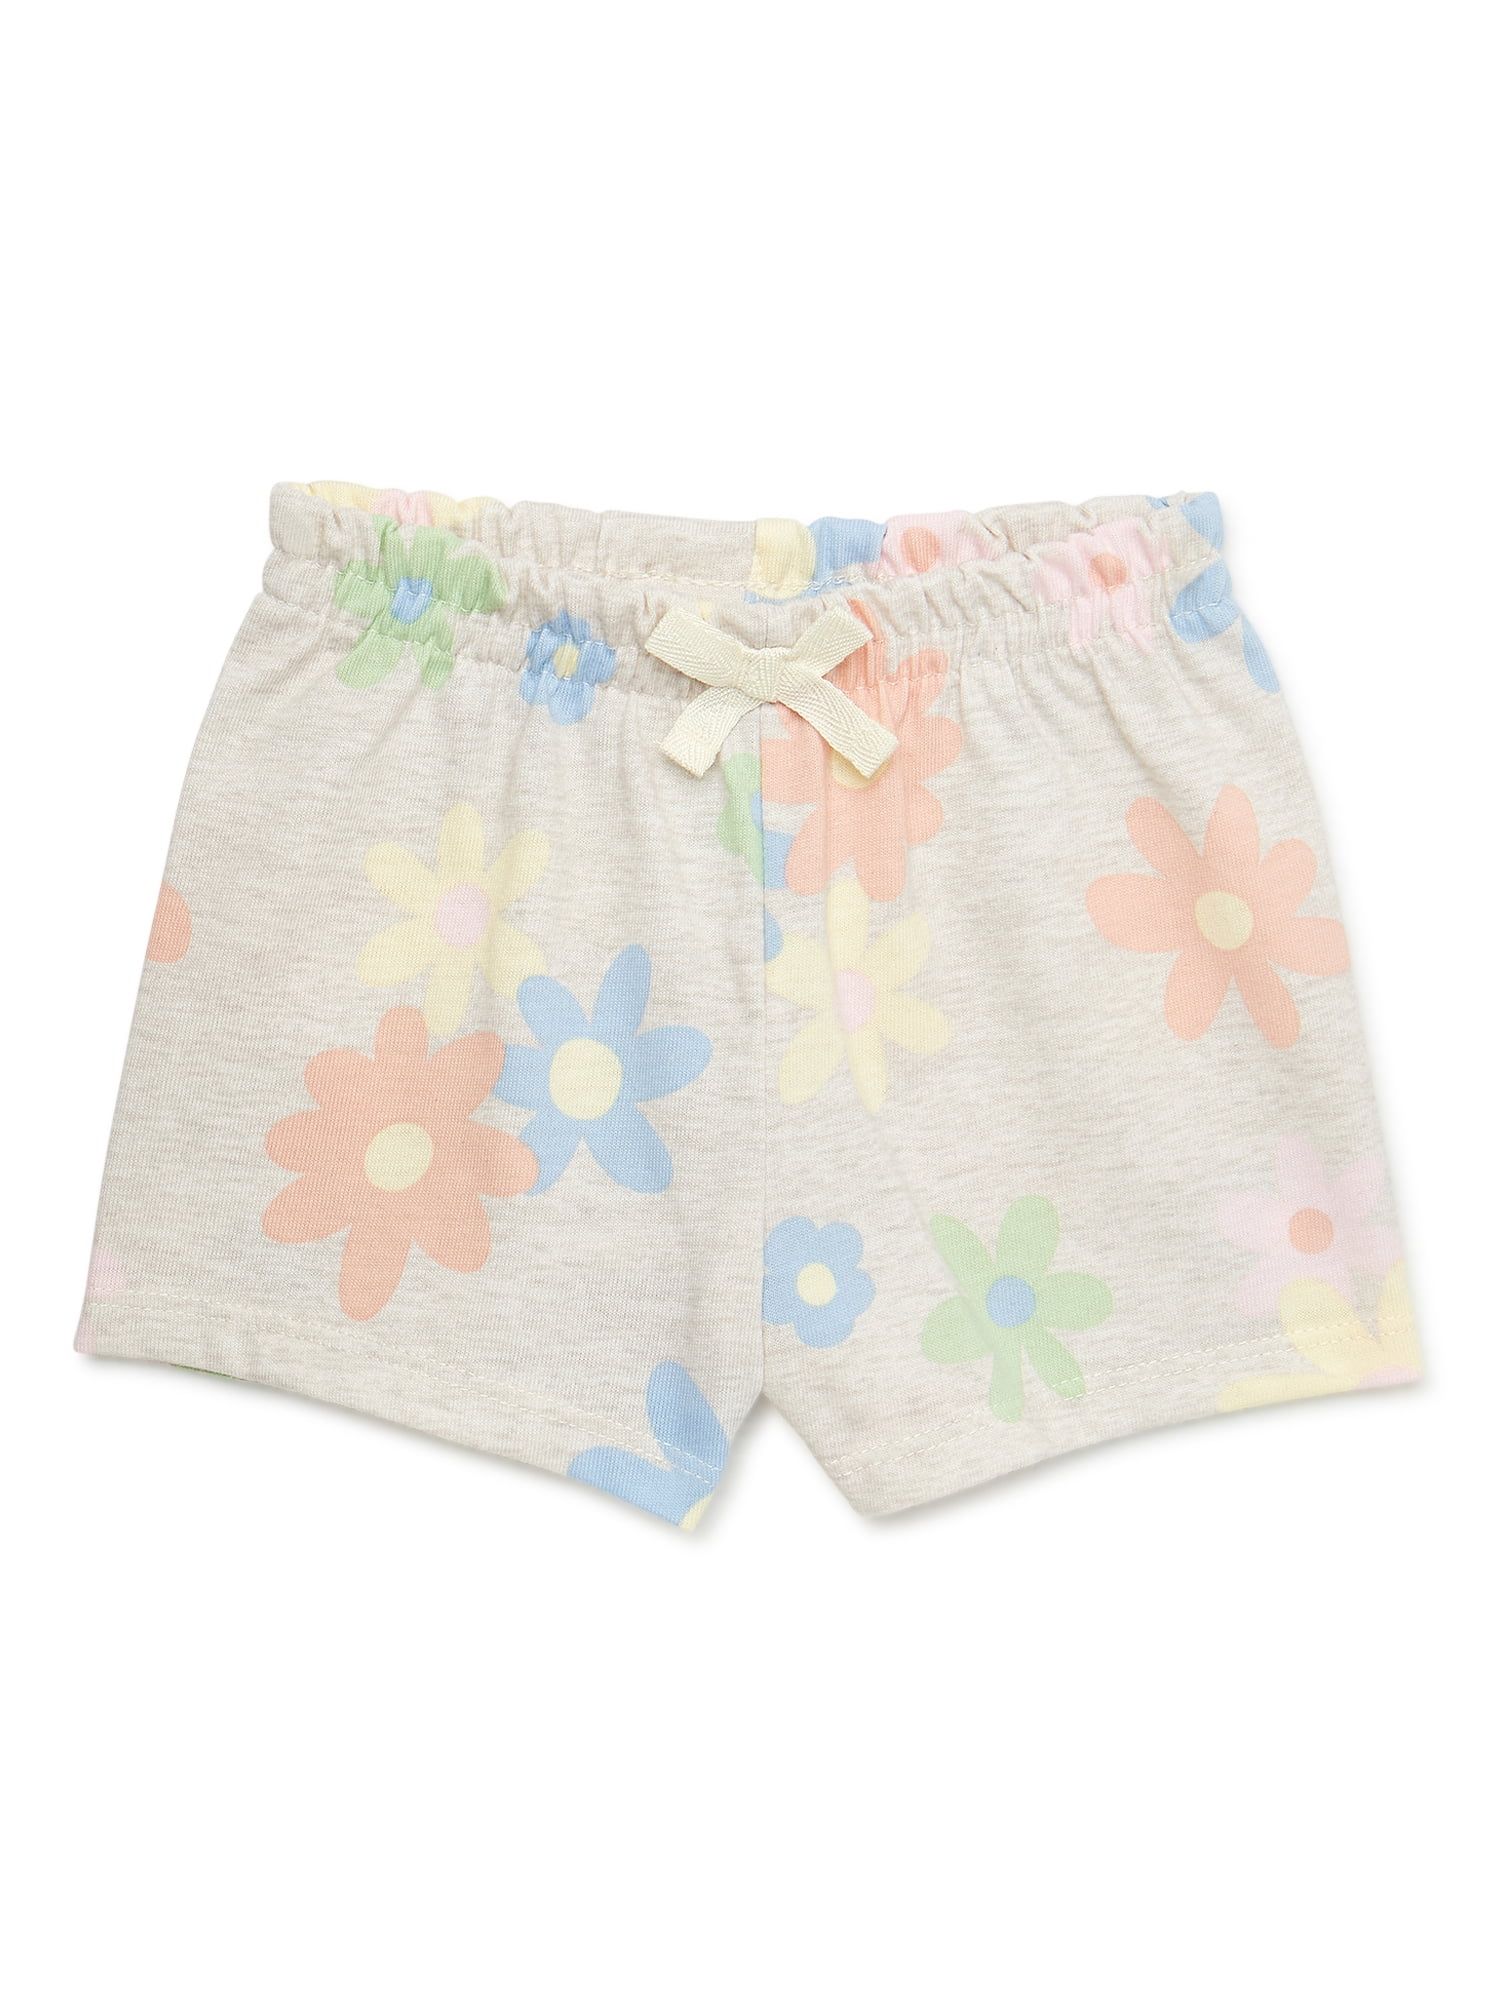 Garanimals Baby Girls Paperbag Short, Sizes 0-24 Months - Walmart.com | Walmart (US)